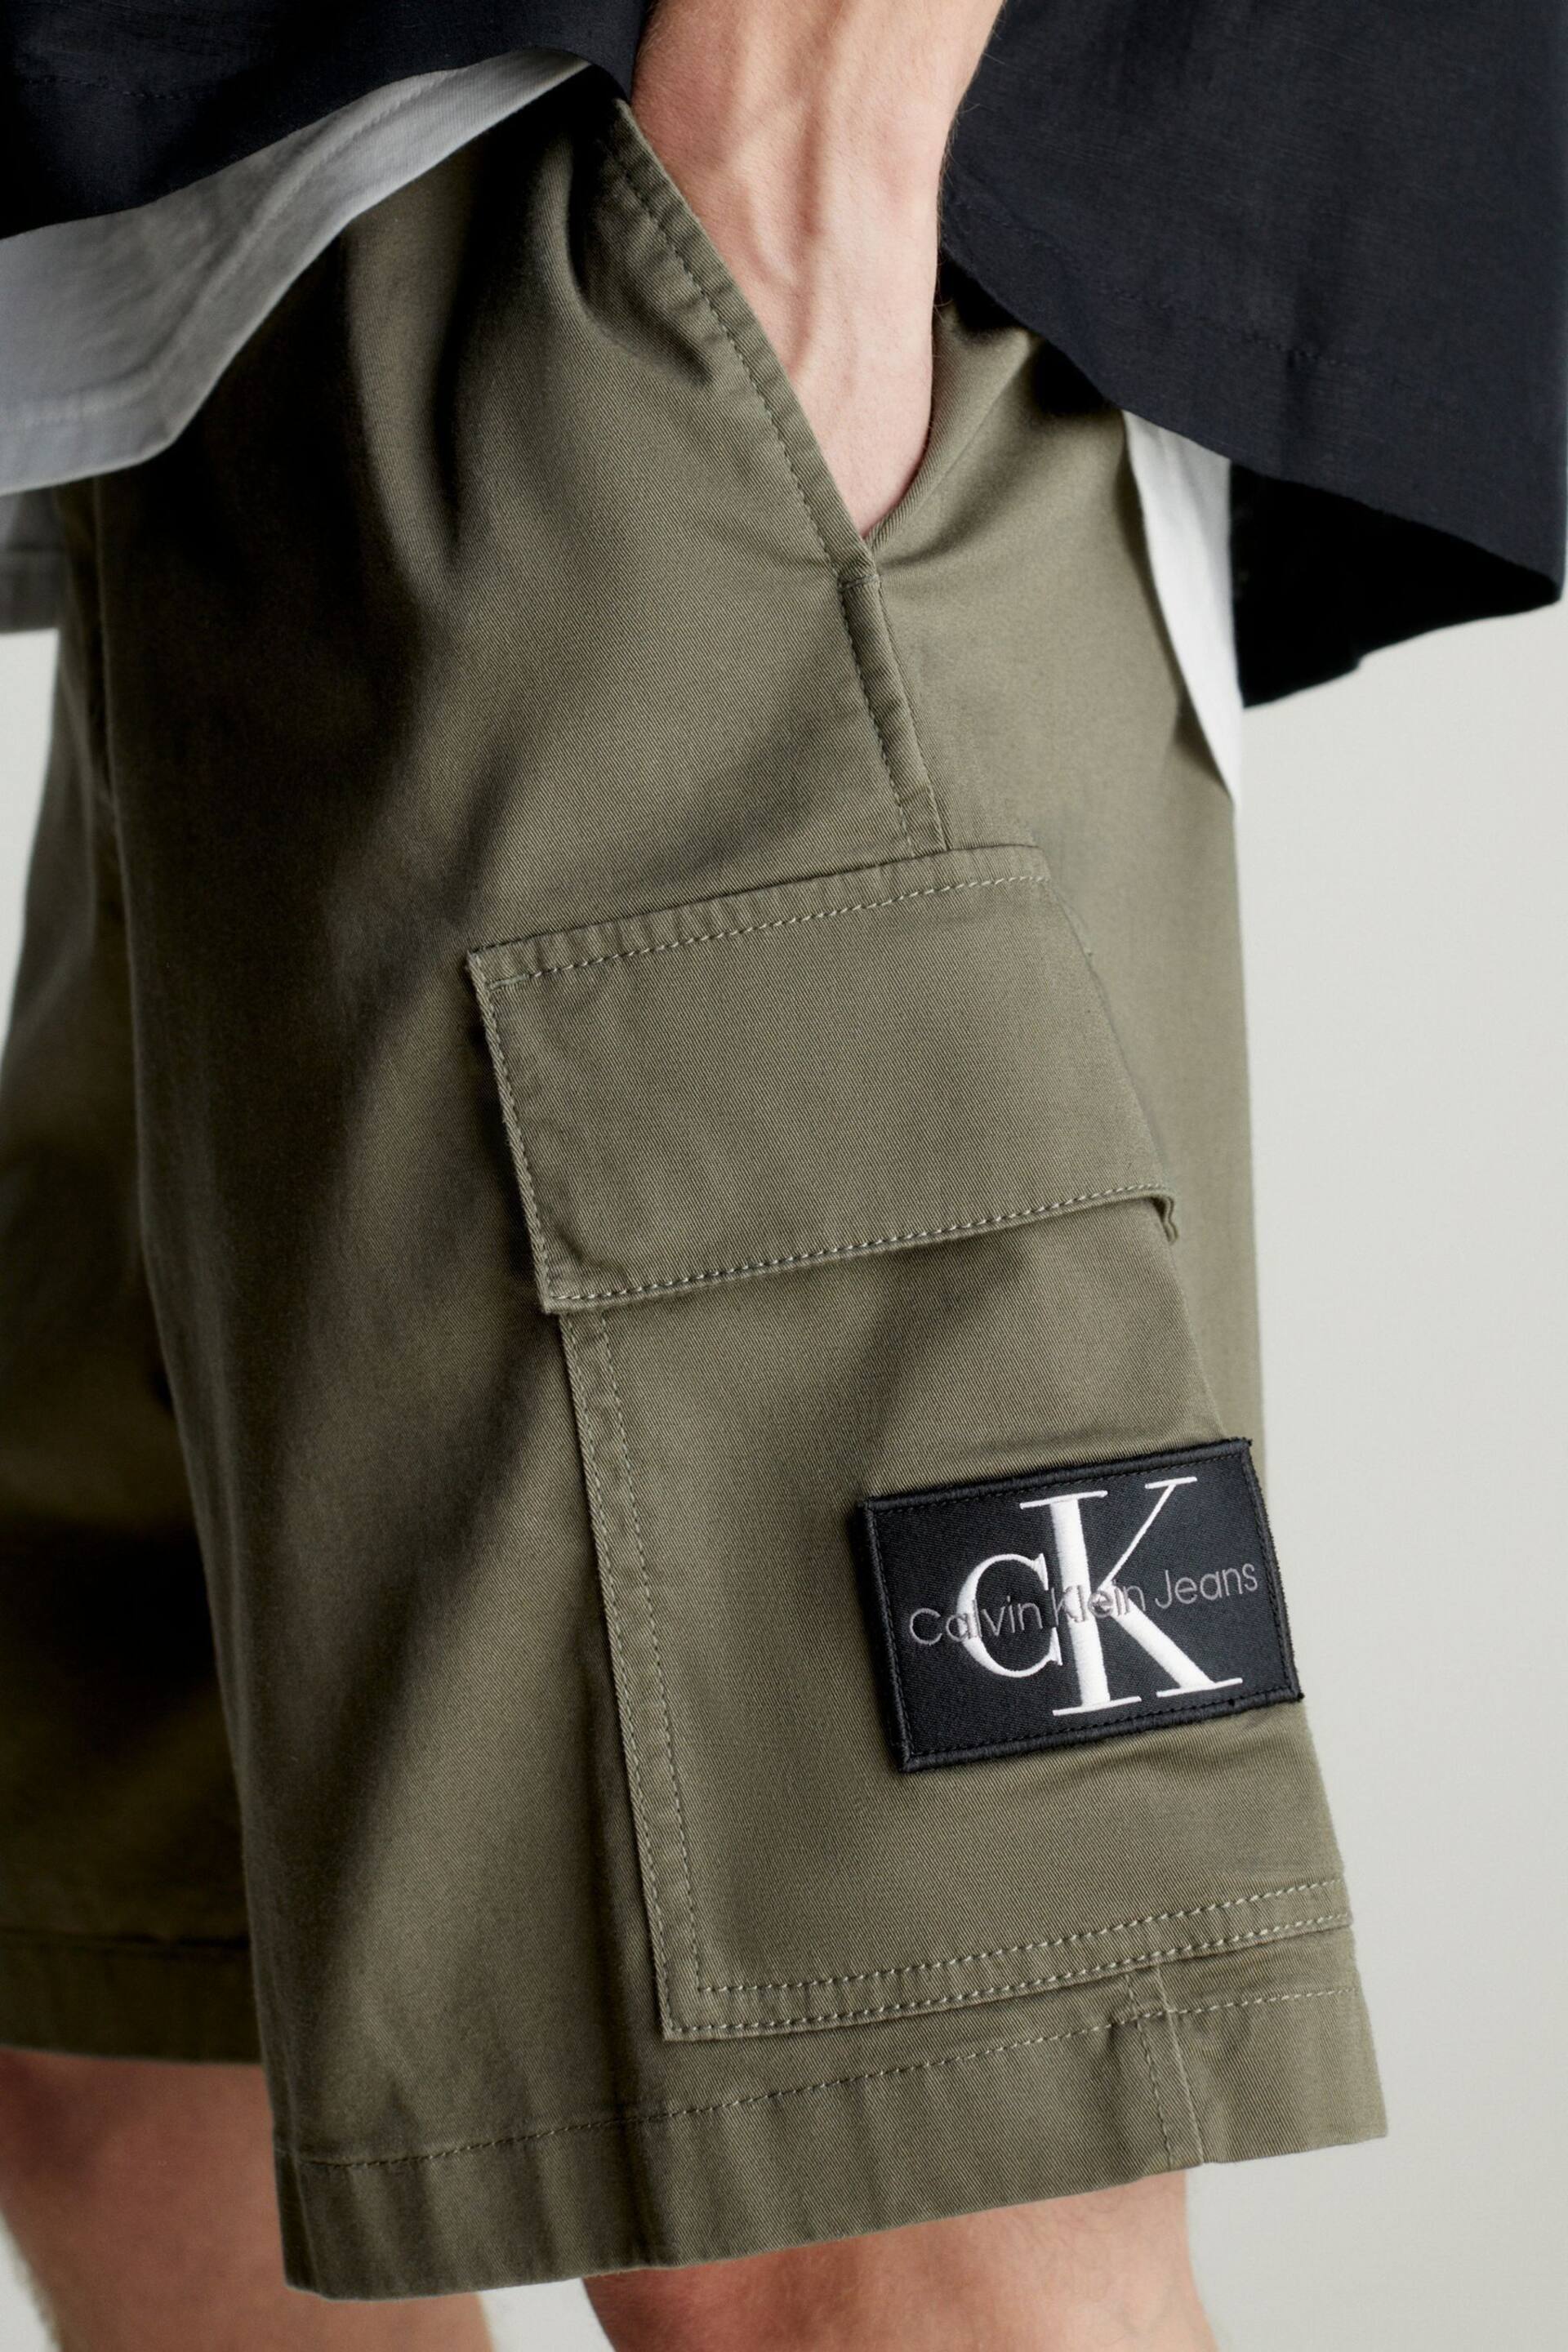 Calvin Klein Green Cargo Woven Shorts - Image 3 of 3